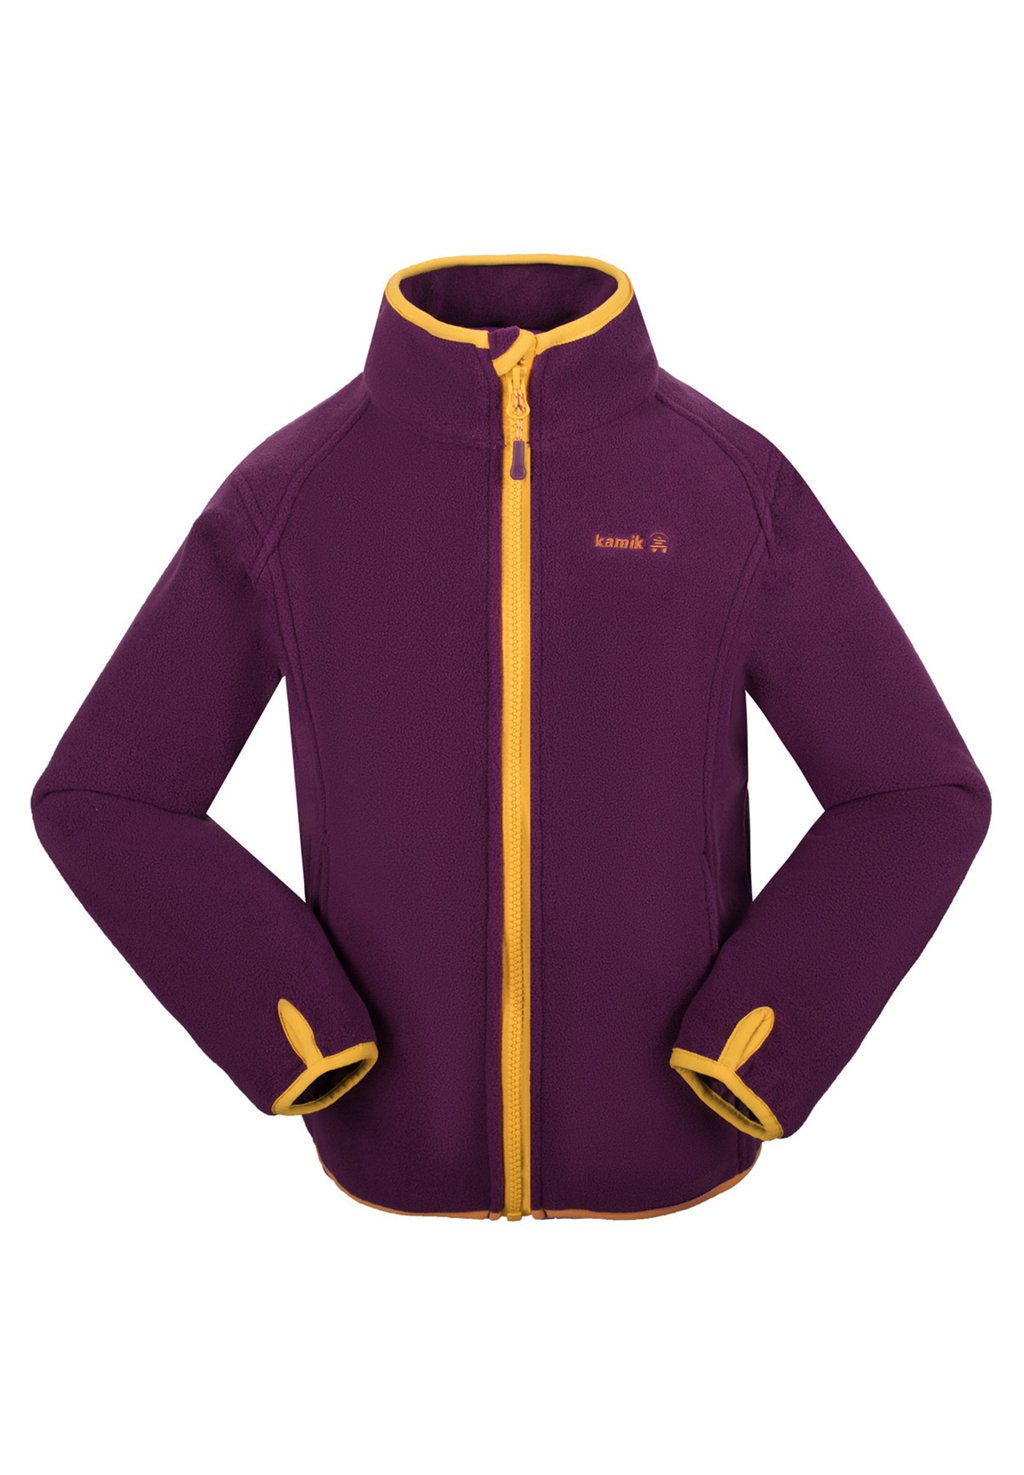 Флисовая куртка Kamik, цвет grape saffron raisin флисовая куртка auroraa bekleidung kamik цвет grape saffron raisin v46926 gsf